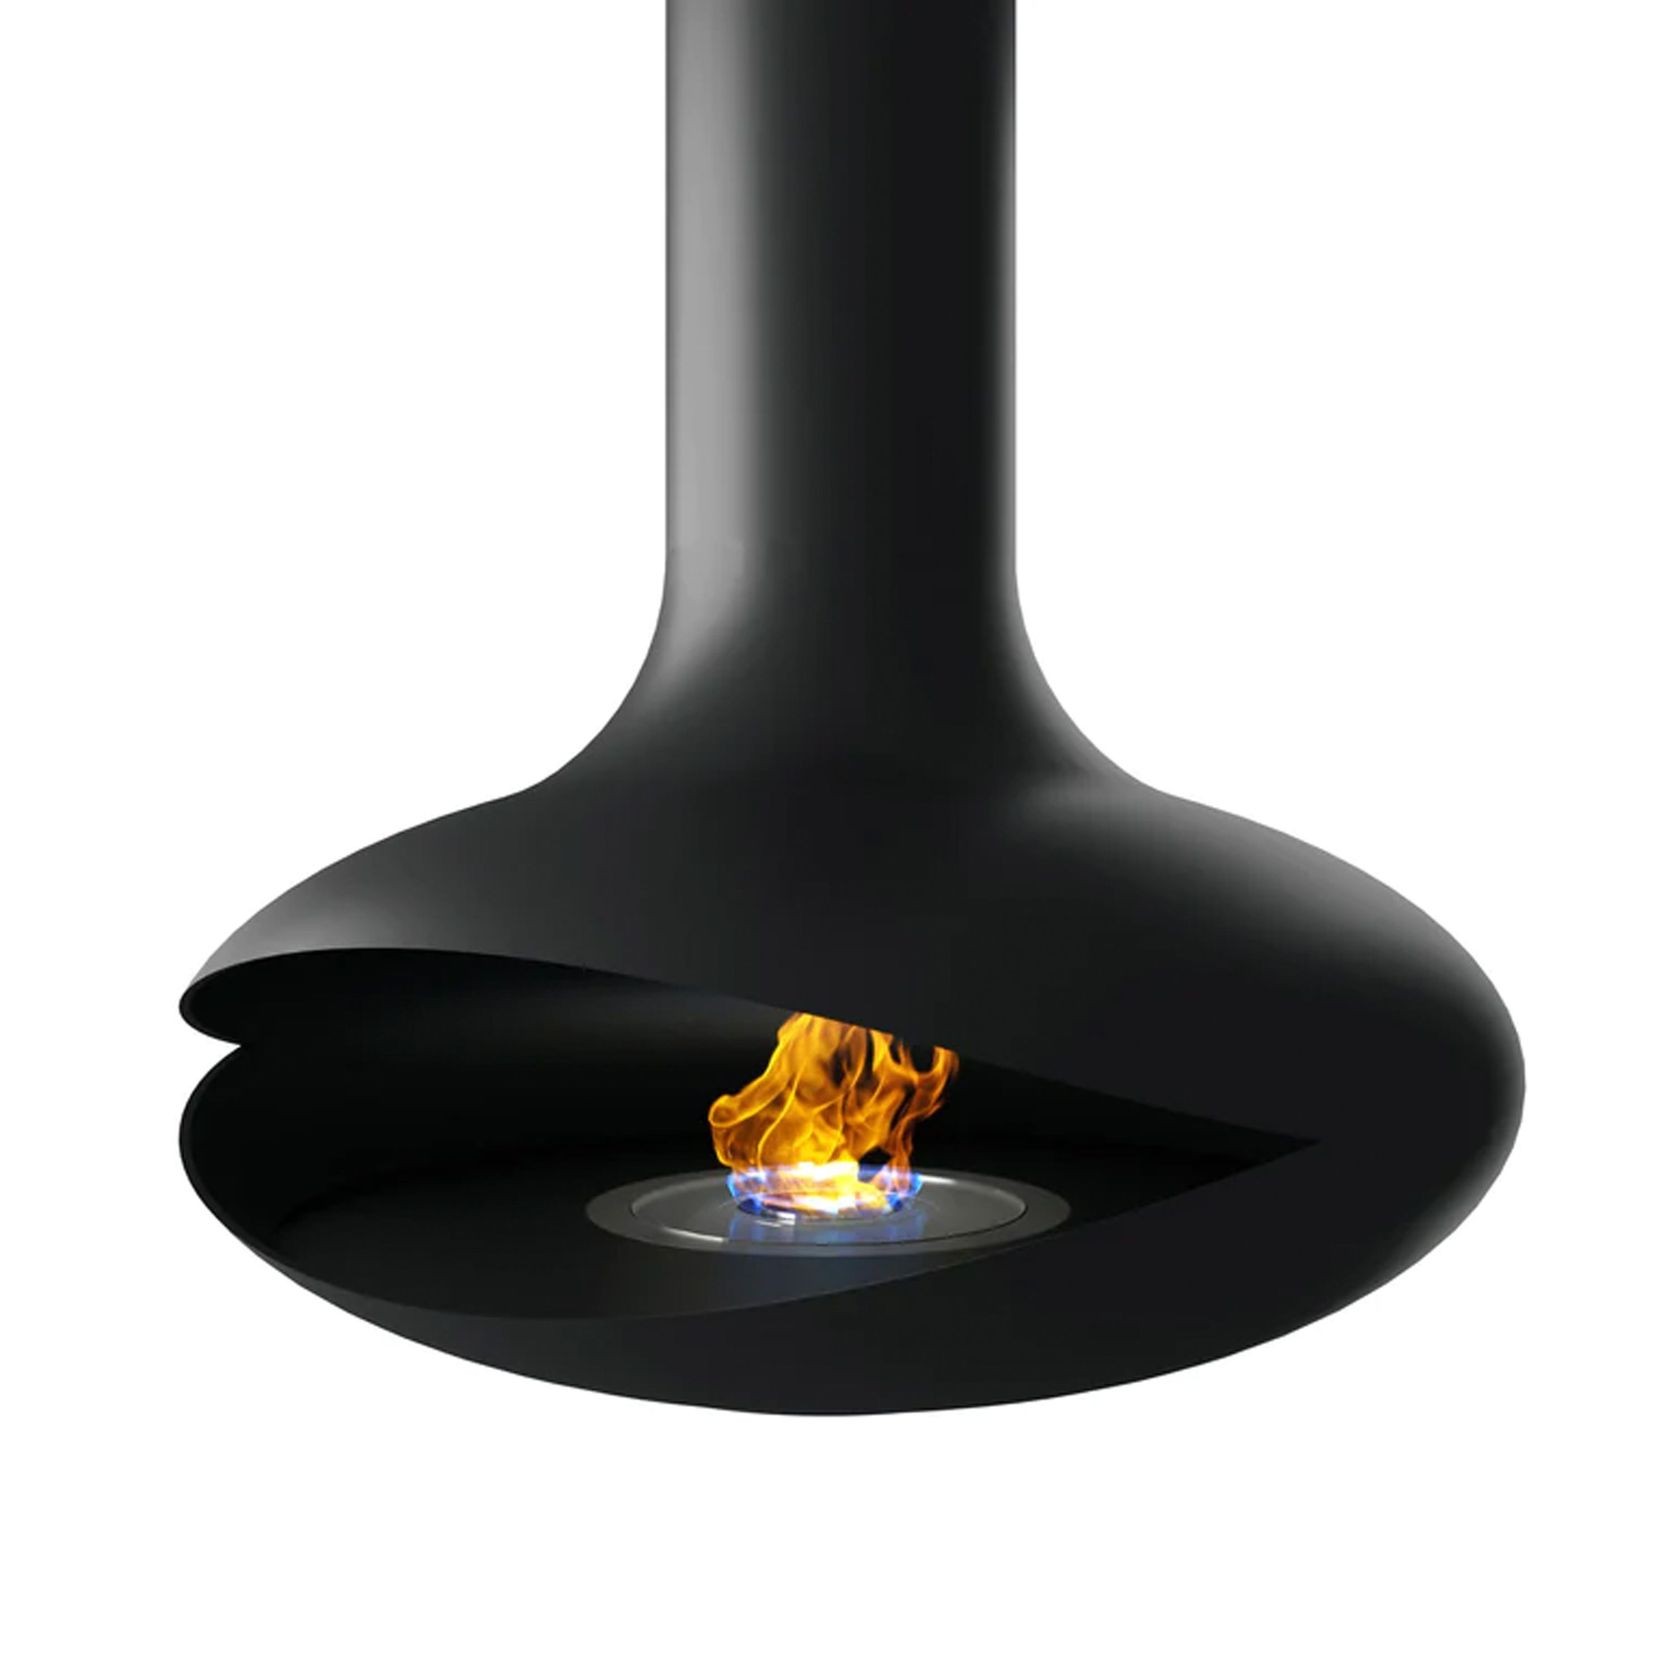 Zen Elegante Planika Bio-Ethanol Suspended Fireplace gallery detail image